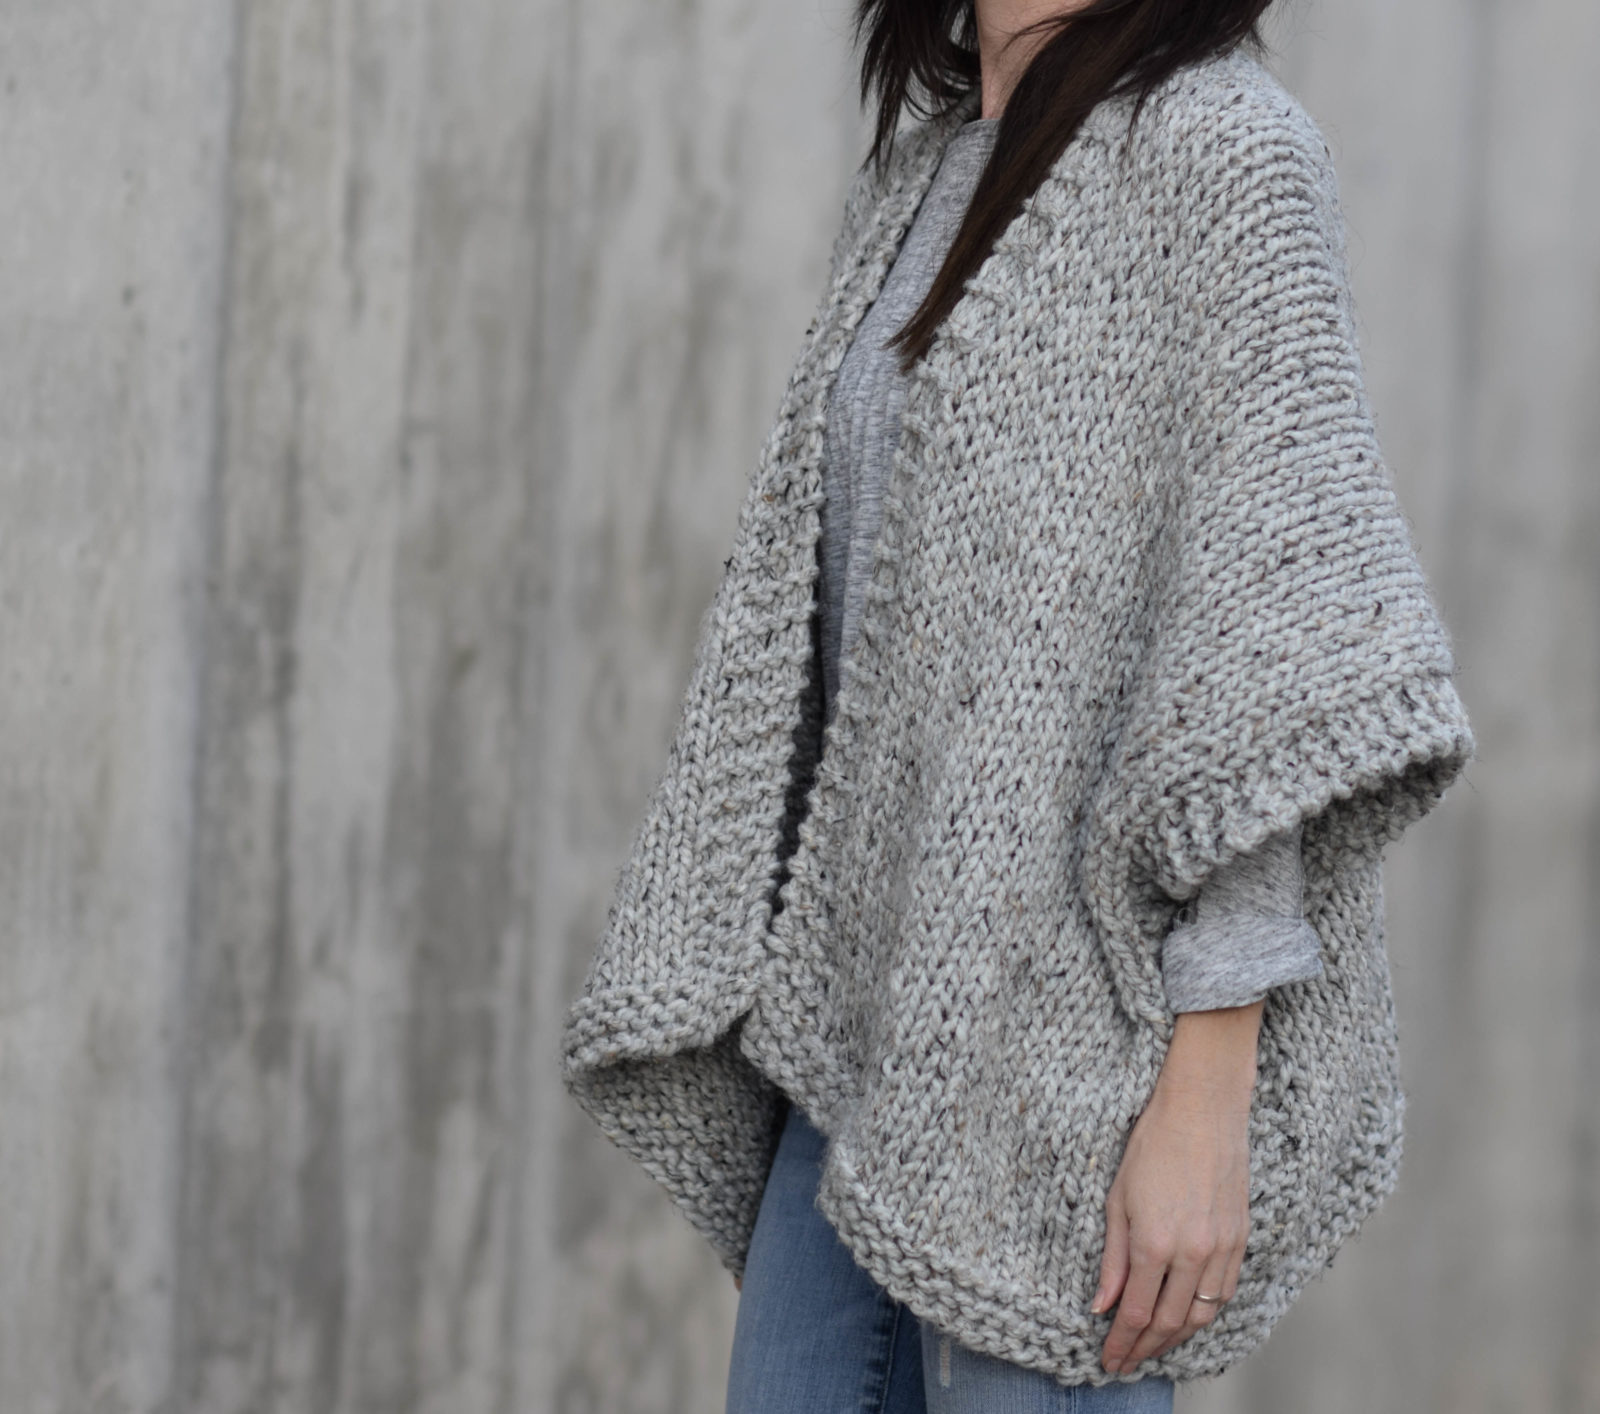 Telluride Easy Knit Kimono Pattern – Mama In A Stitch